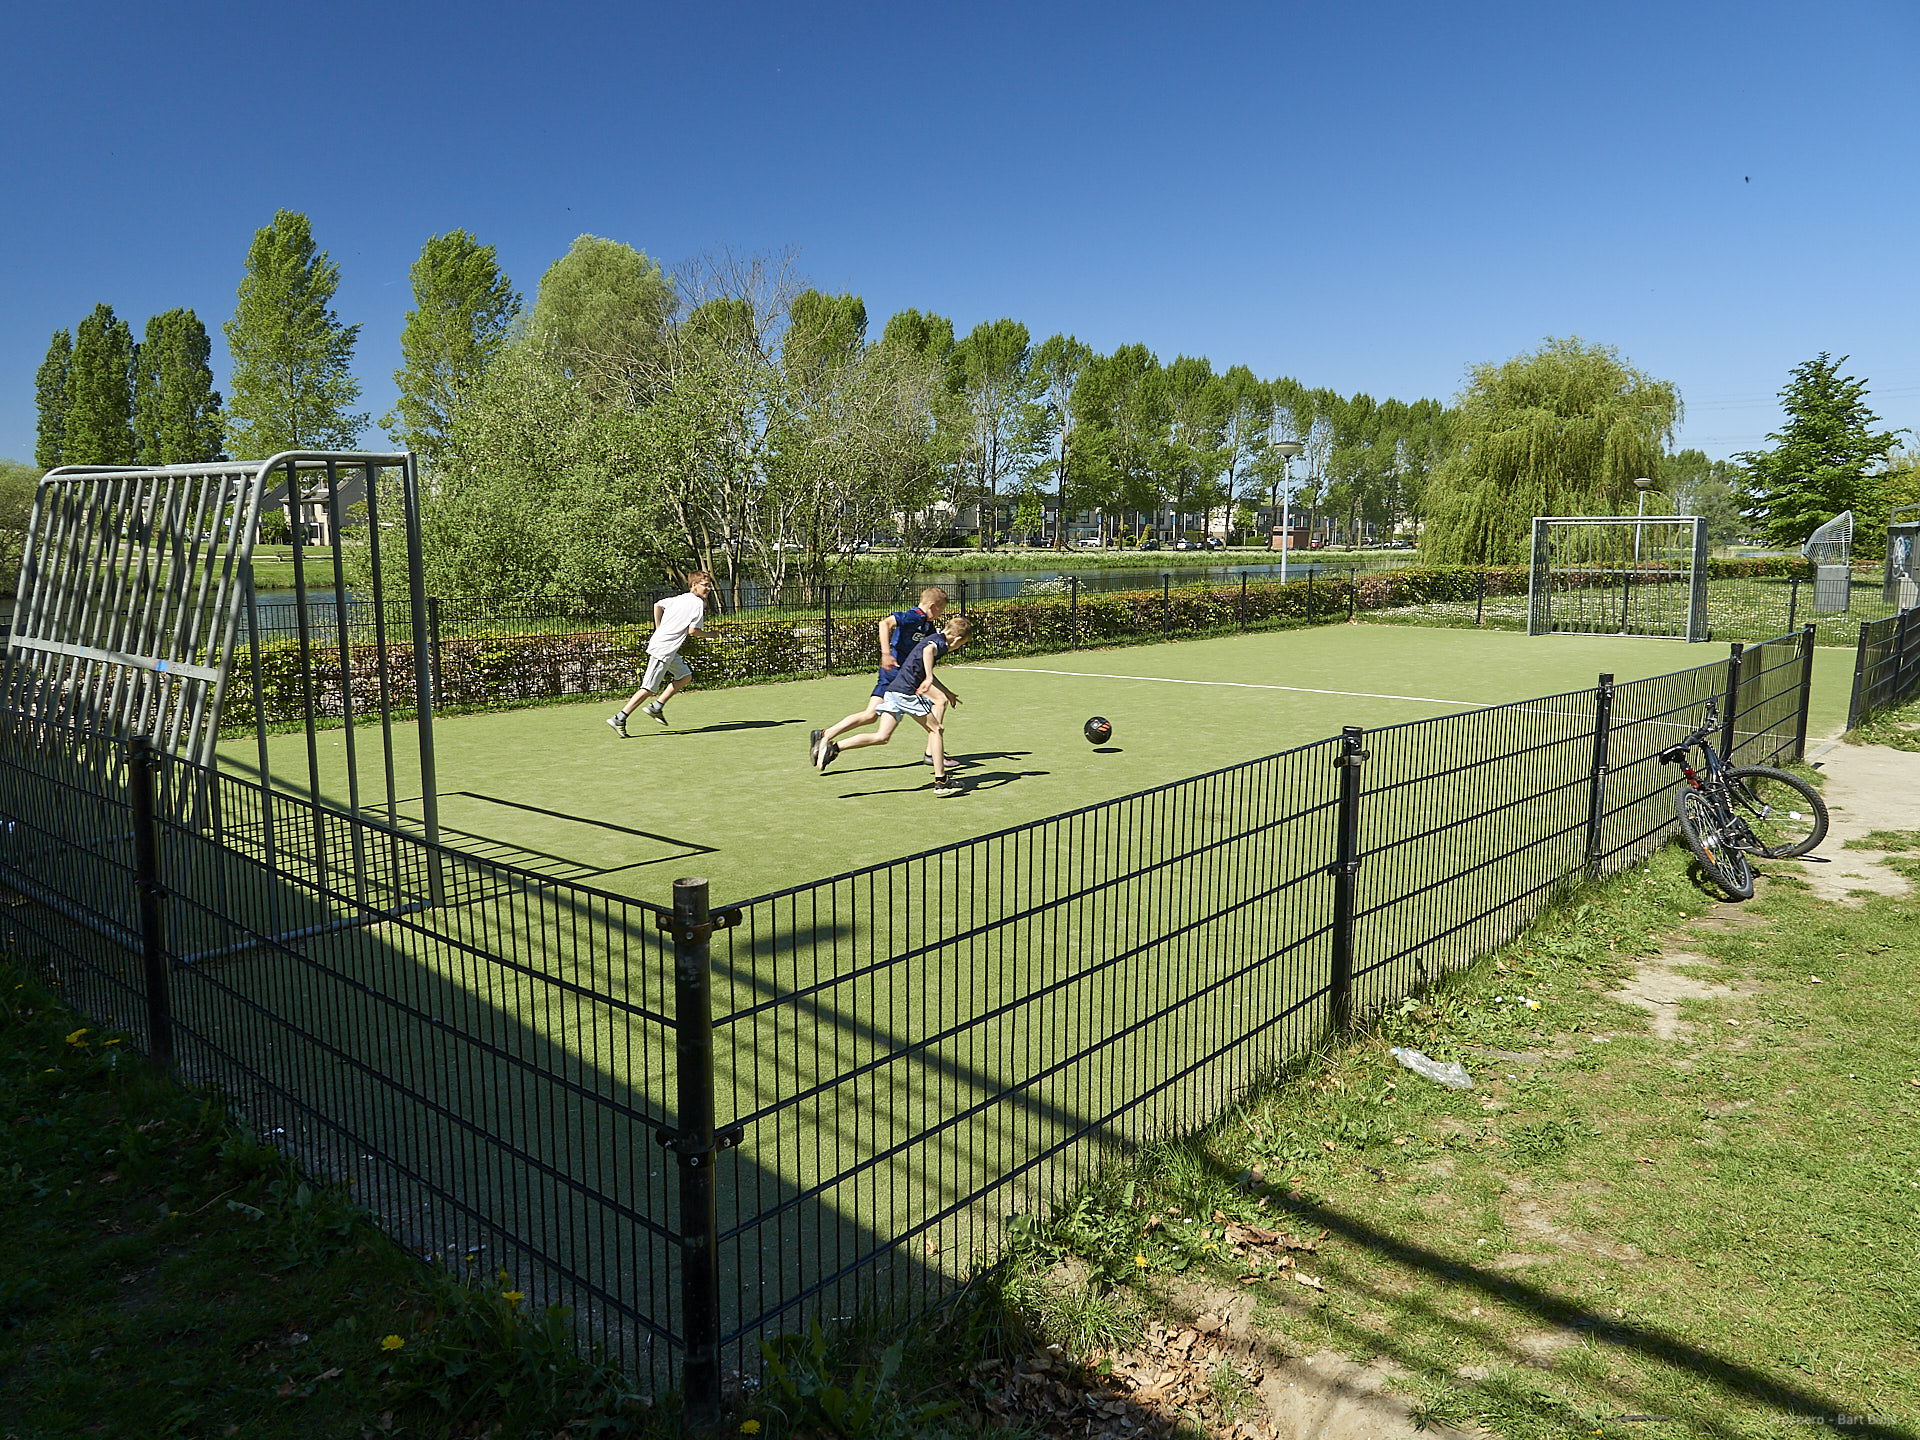 Afbeelding:Foto van voetbalveldje met spelende jongens